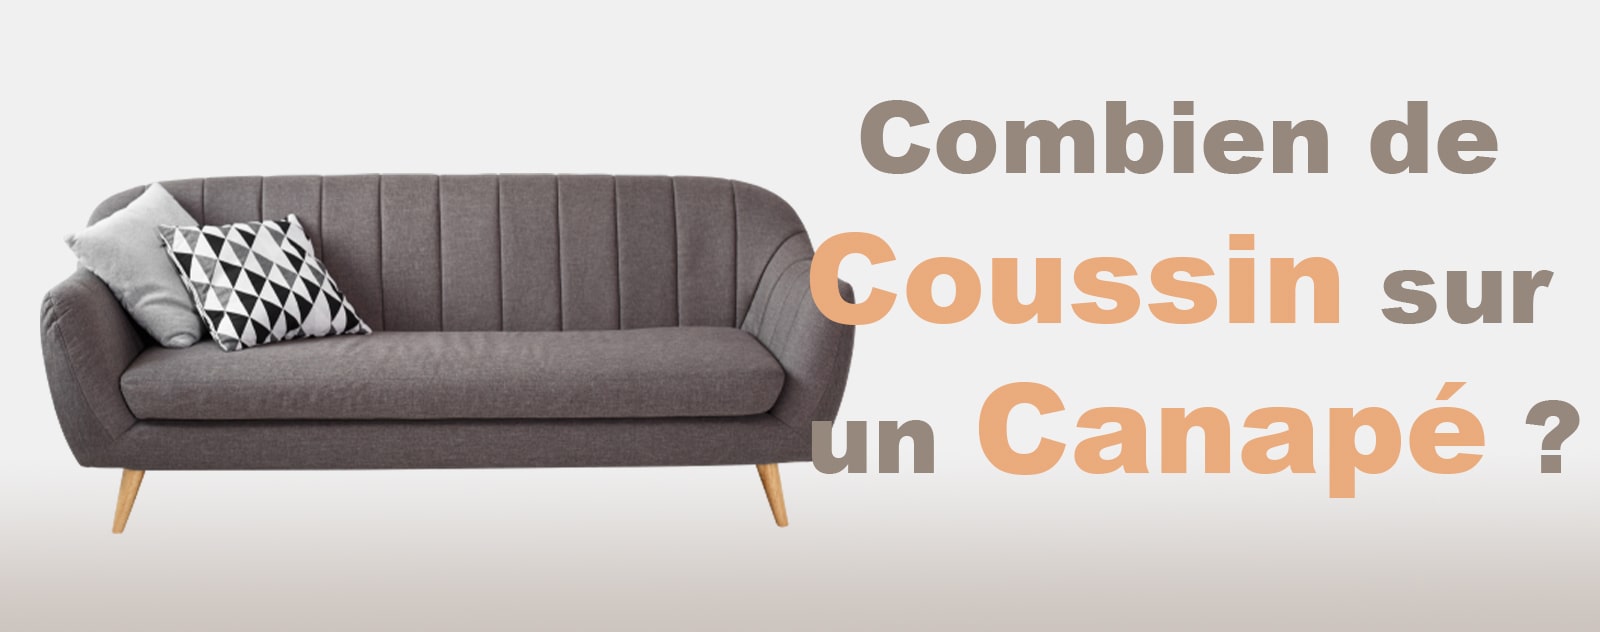 Combien de Coussin sur un Canapé ?